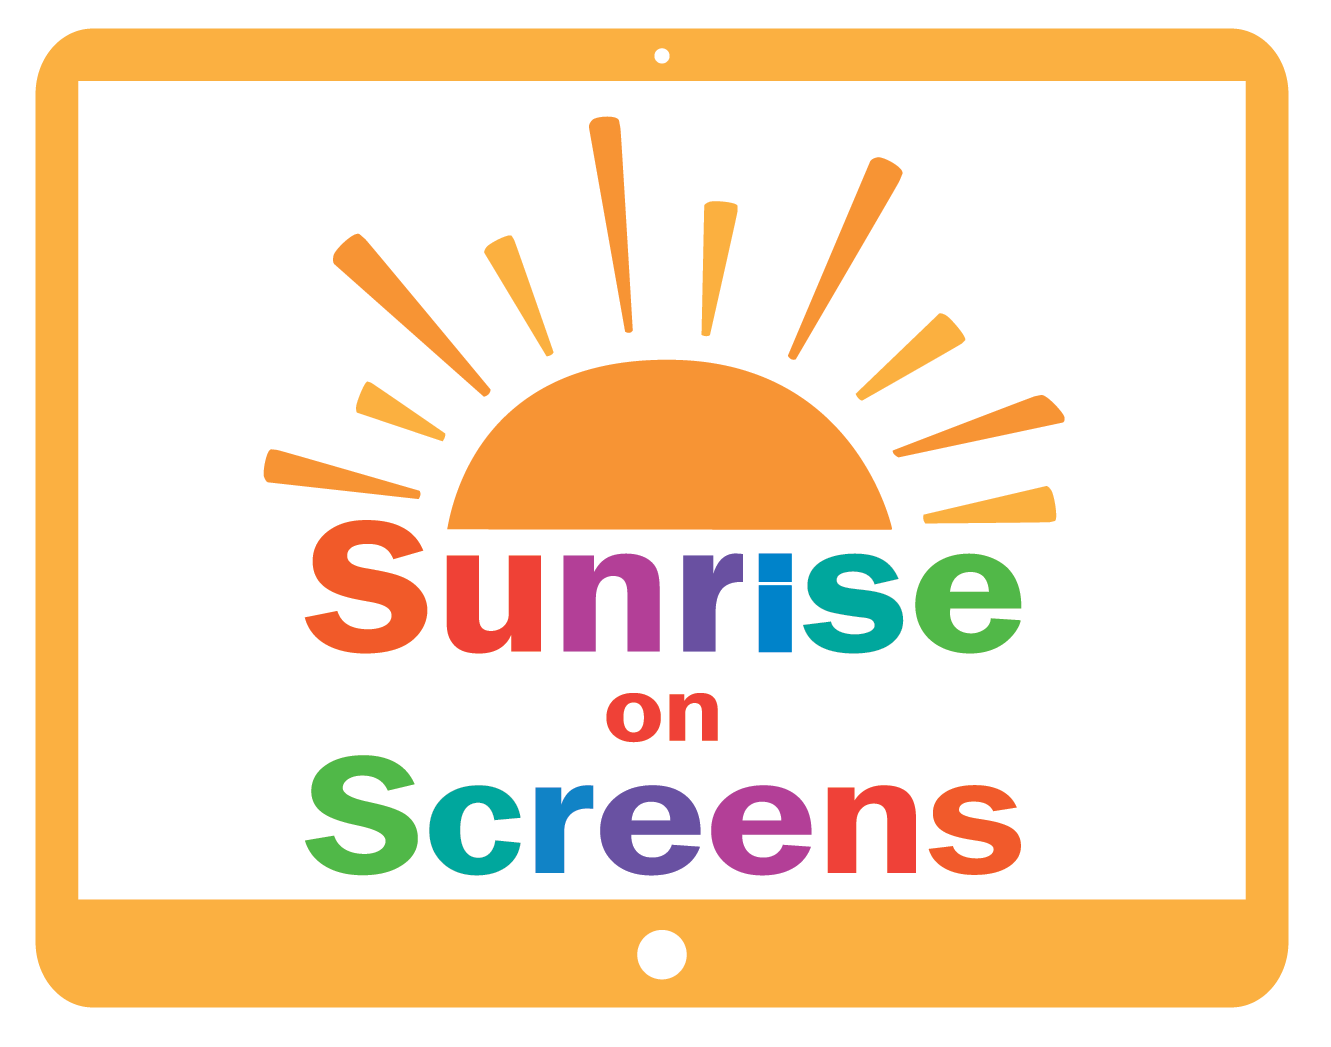 SunriseOnScreens_Logo.png